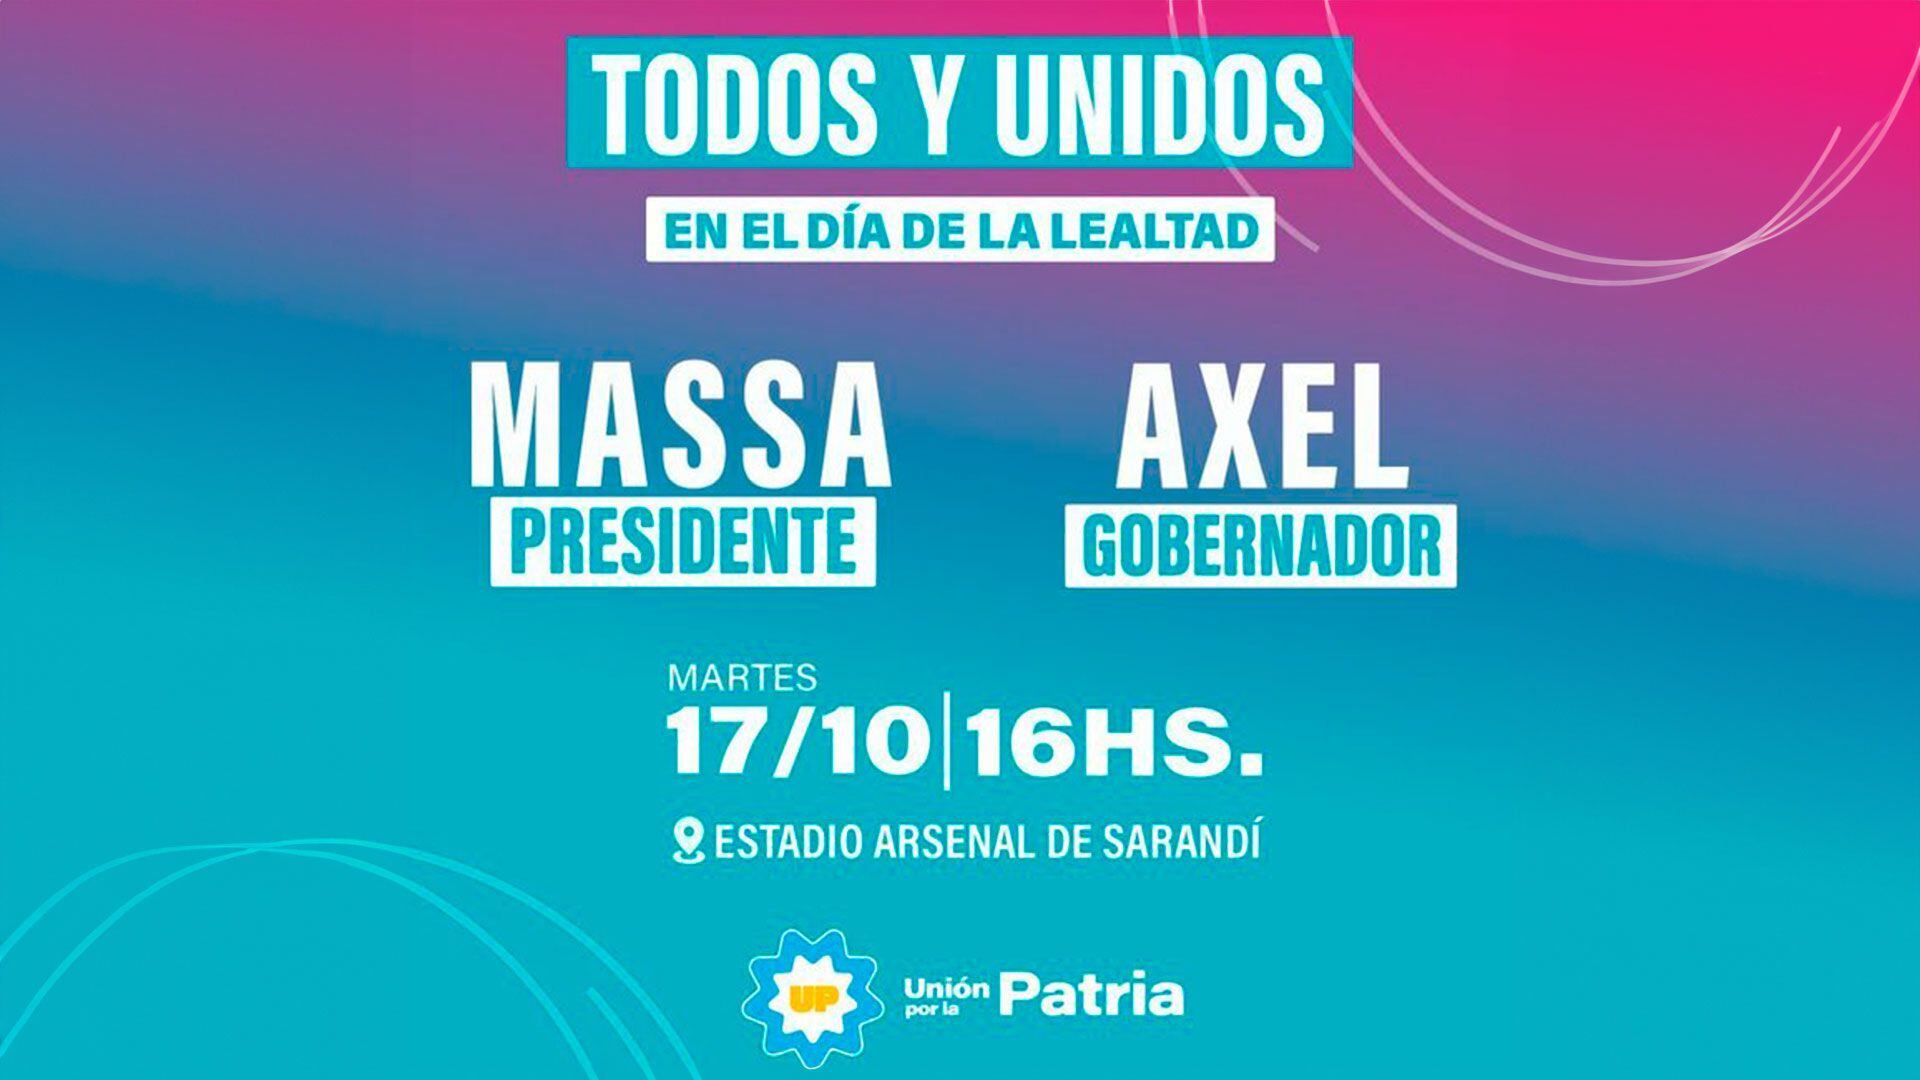 La convocatoria formal para el acto de mañana en Avellaneda